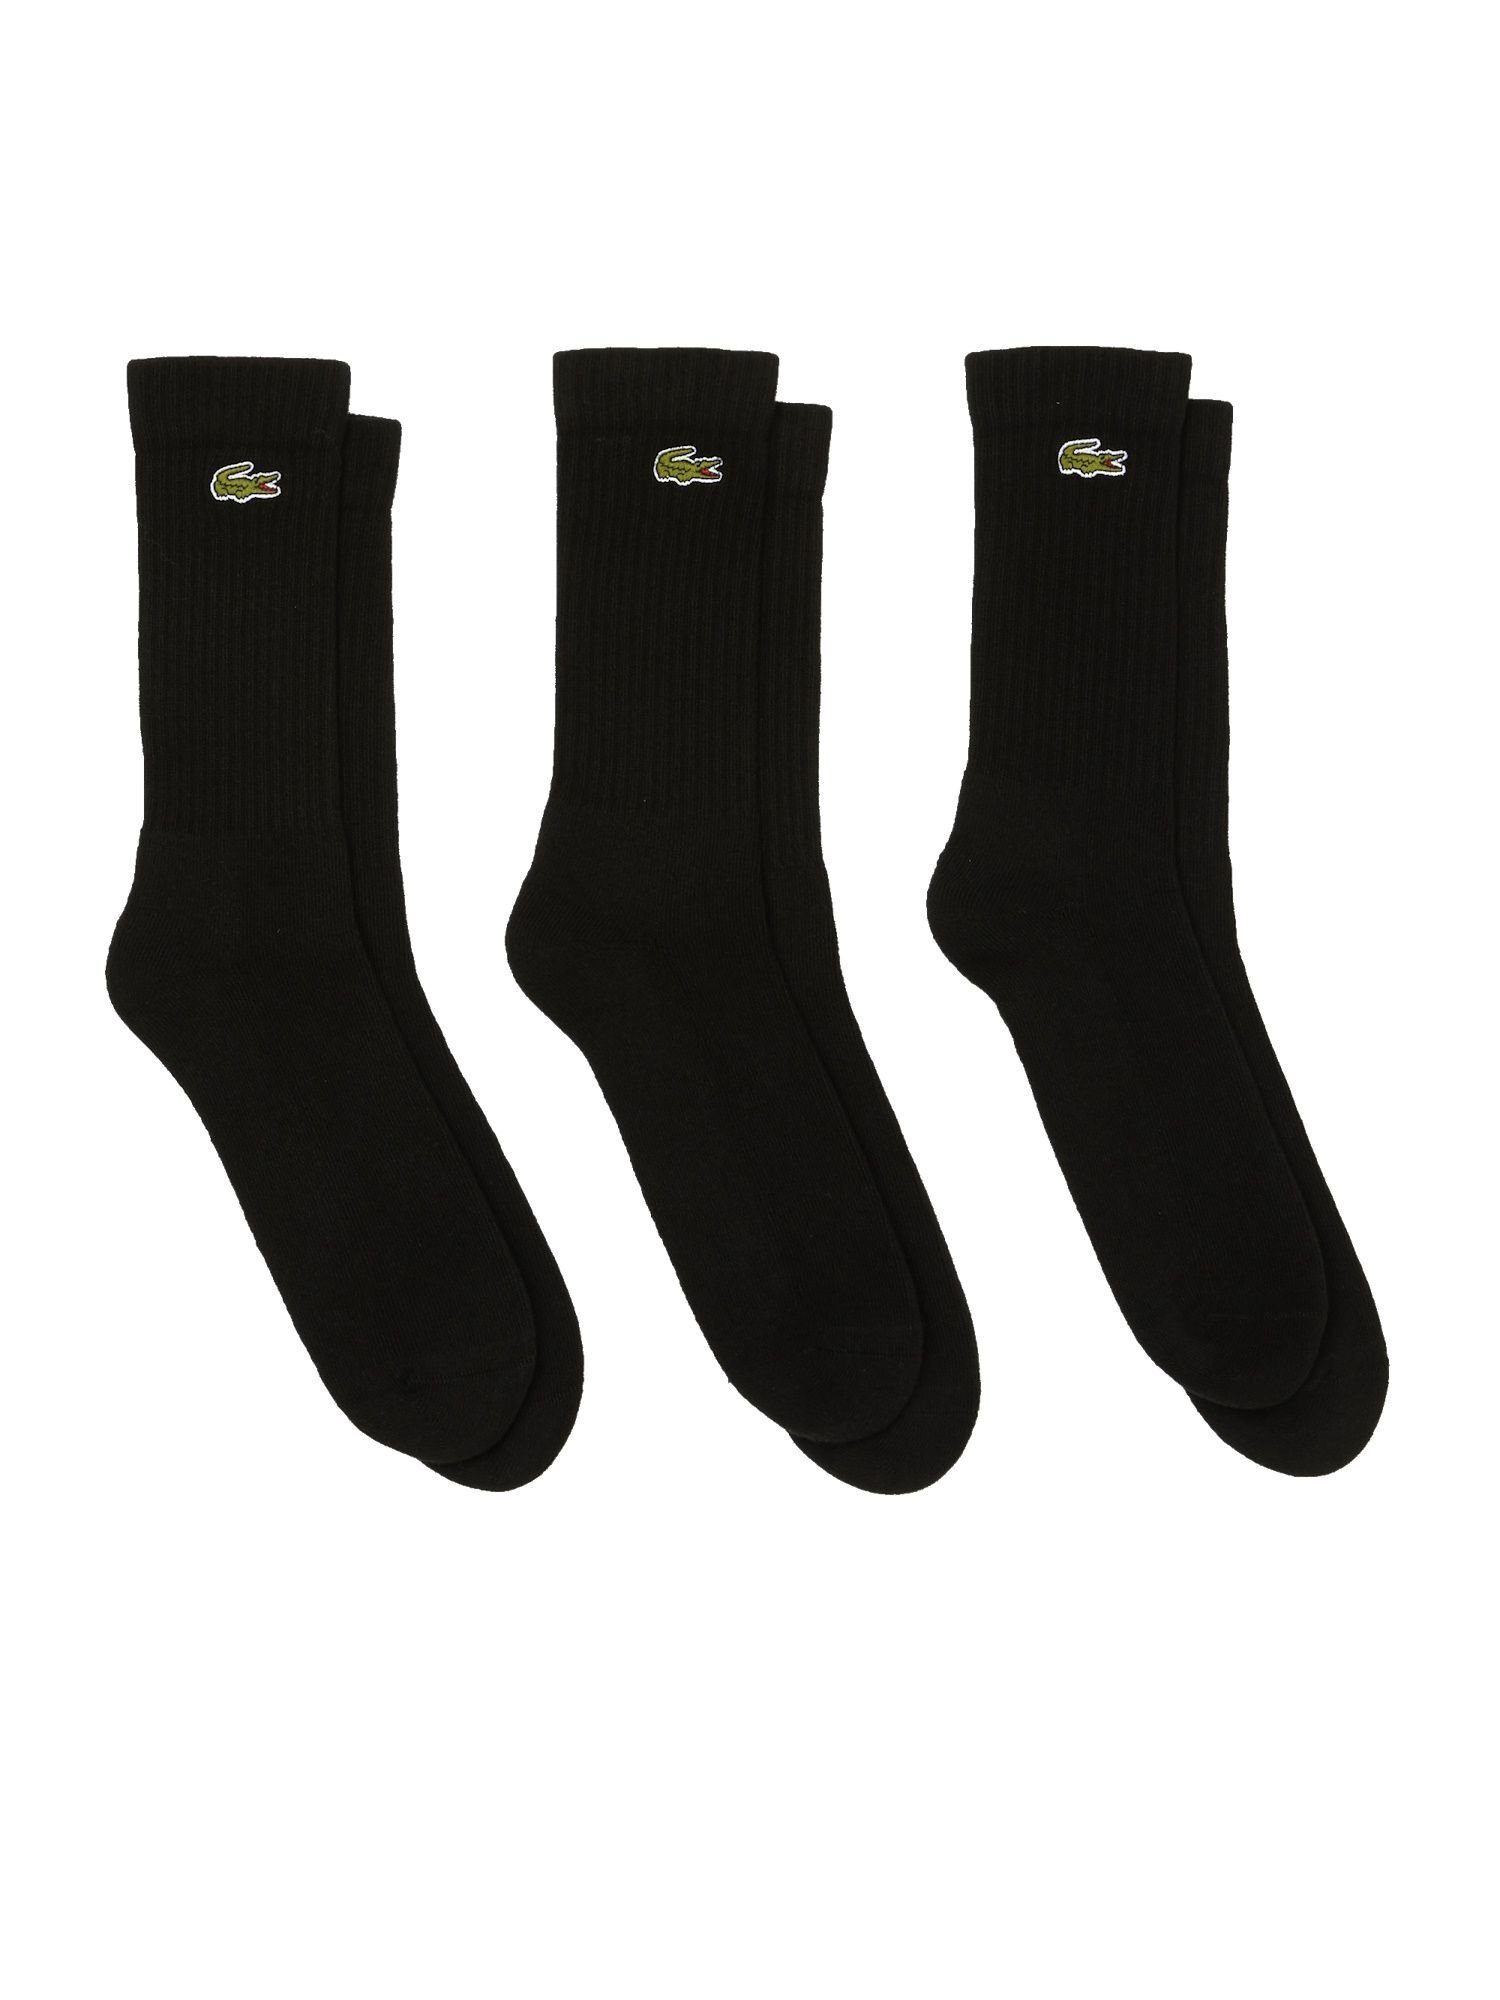 Lacoste Socken Socken Permanent Dreierpack schwarz Socken hohe (3-Paar) Offer